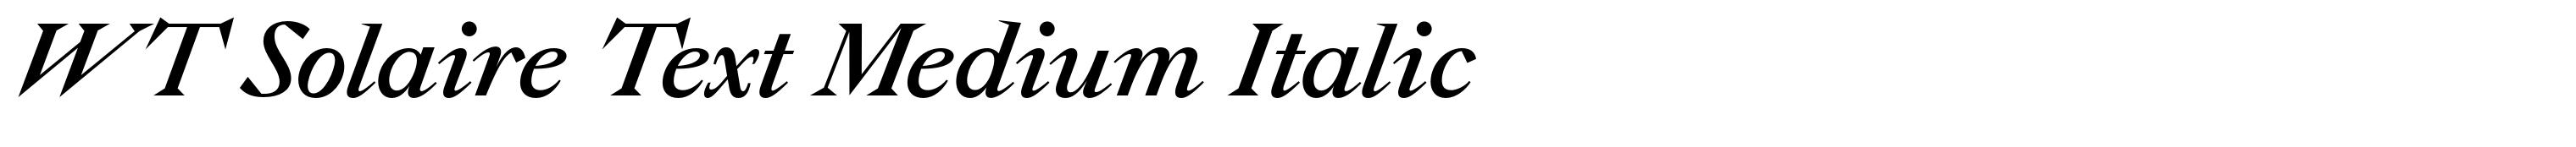 WT Solaire Text Medium Italic